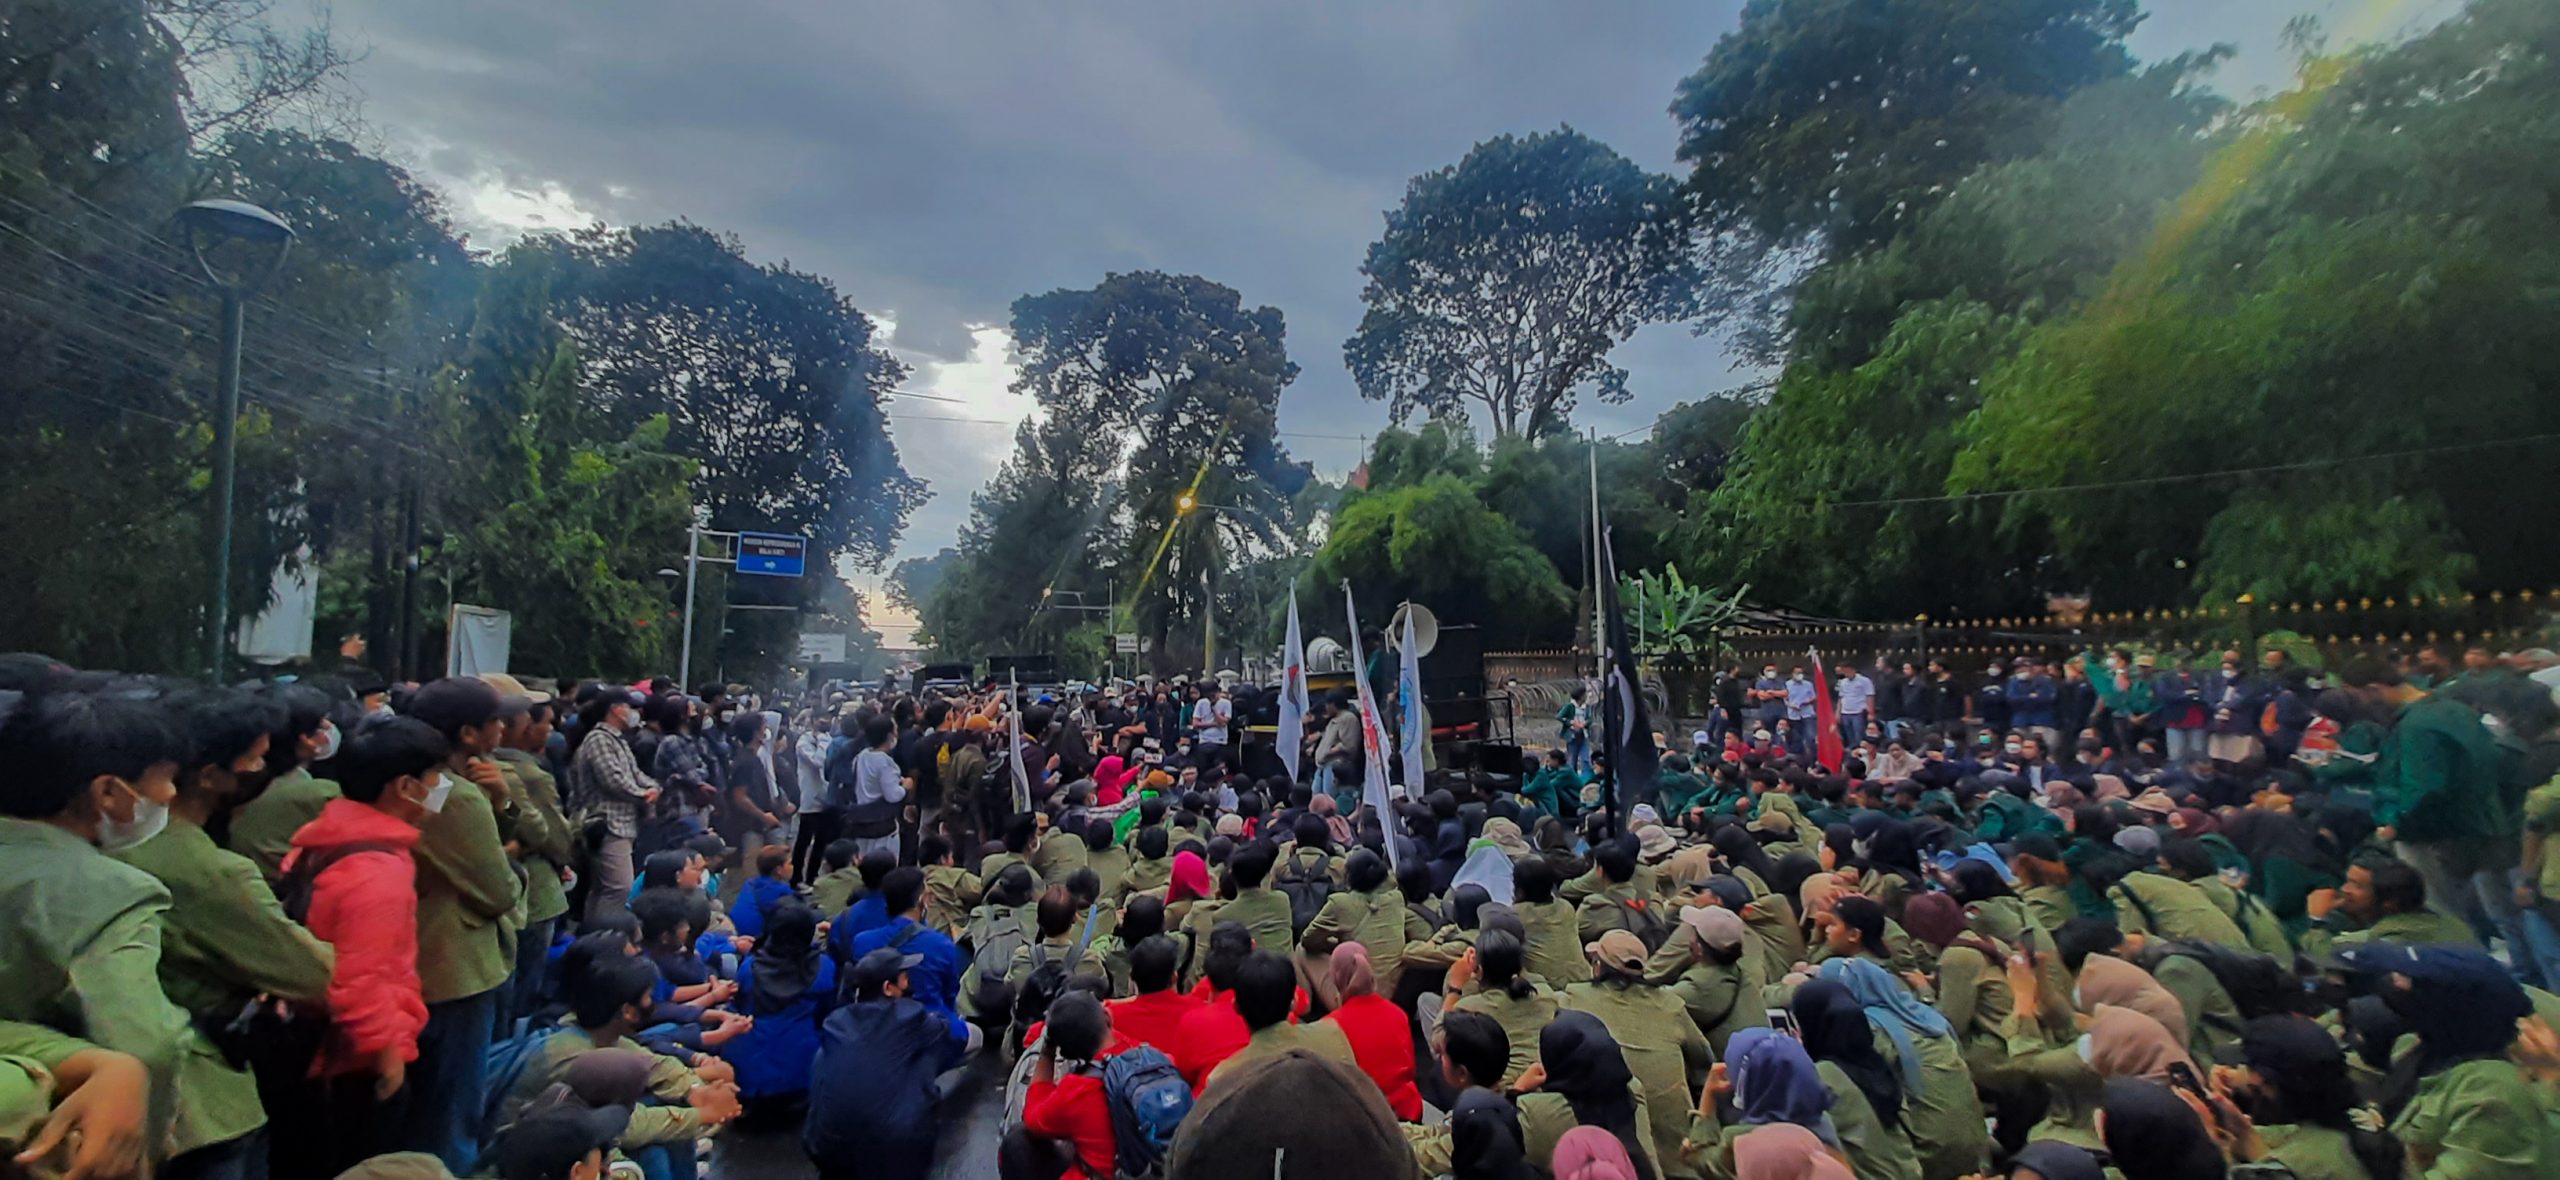 20220408 170858 scaled Aksi Bogor Menggugat Istana, Enam Tuntutan Disuarakan Suara Utama ID Mengabarkan Kebenaran | Website Resmi Suara Utama